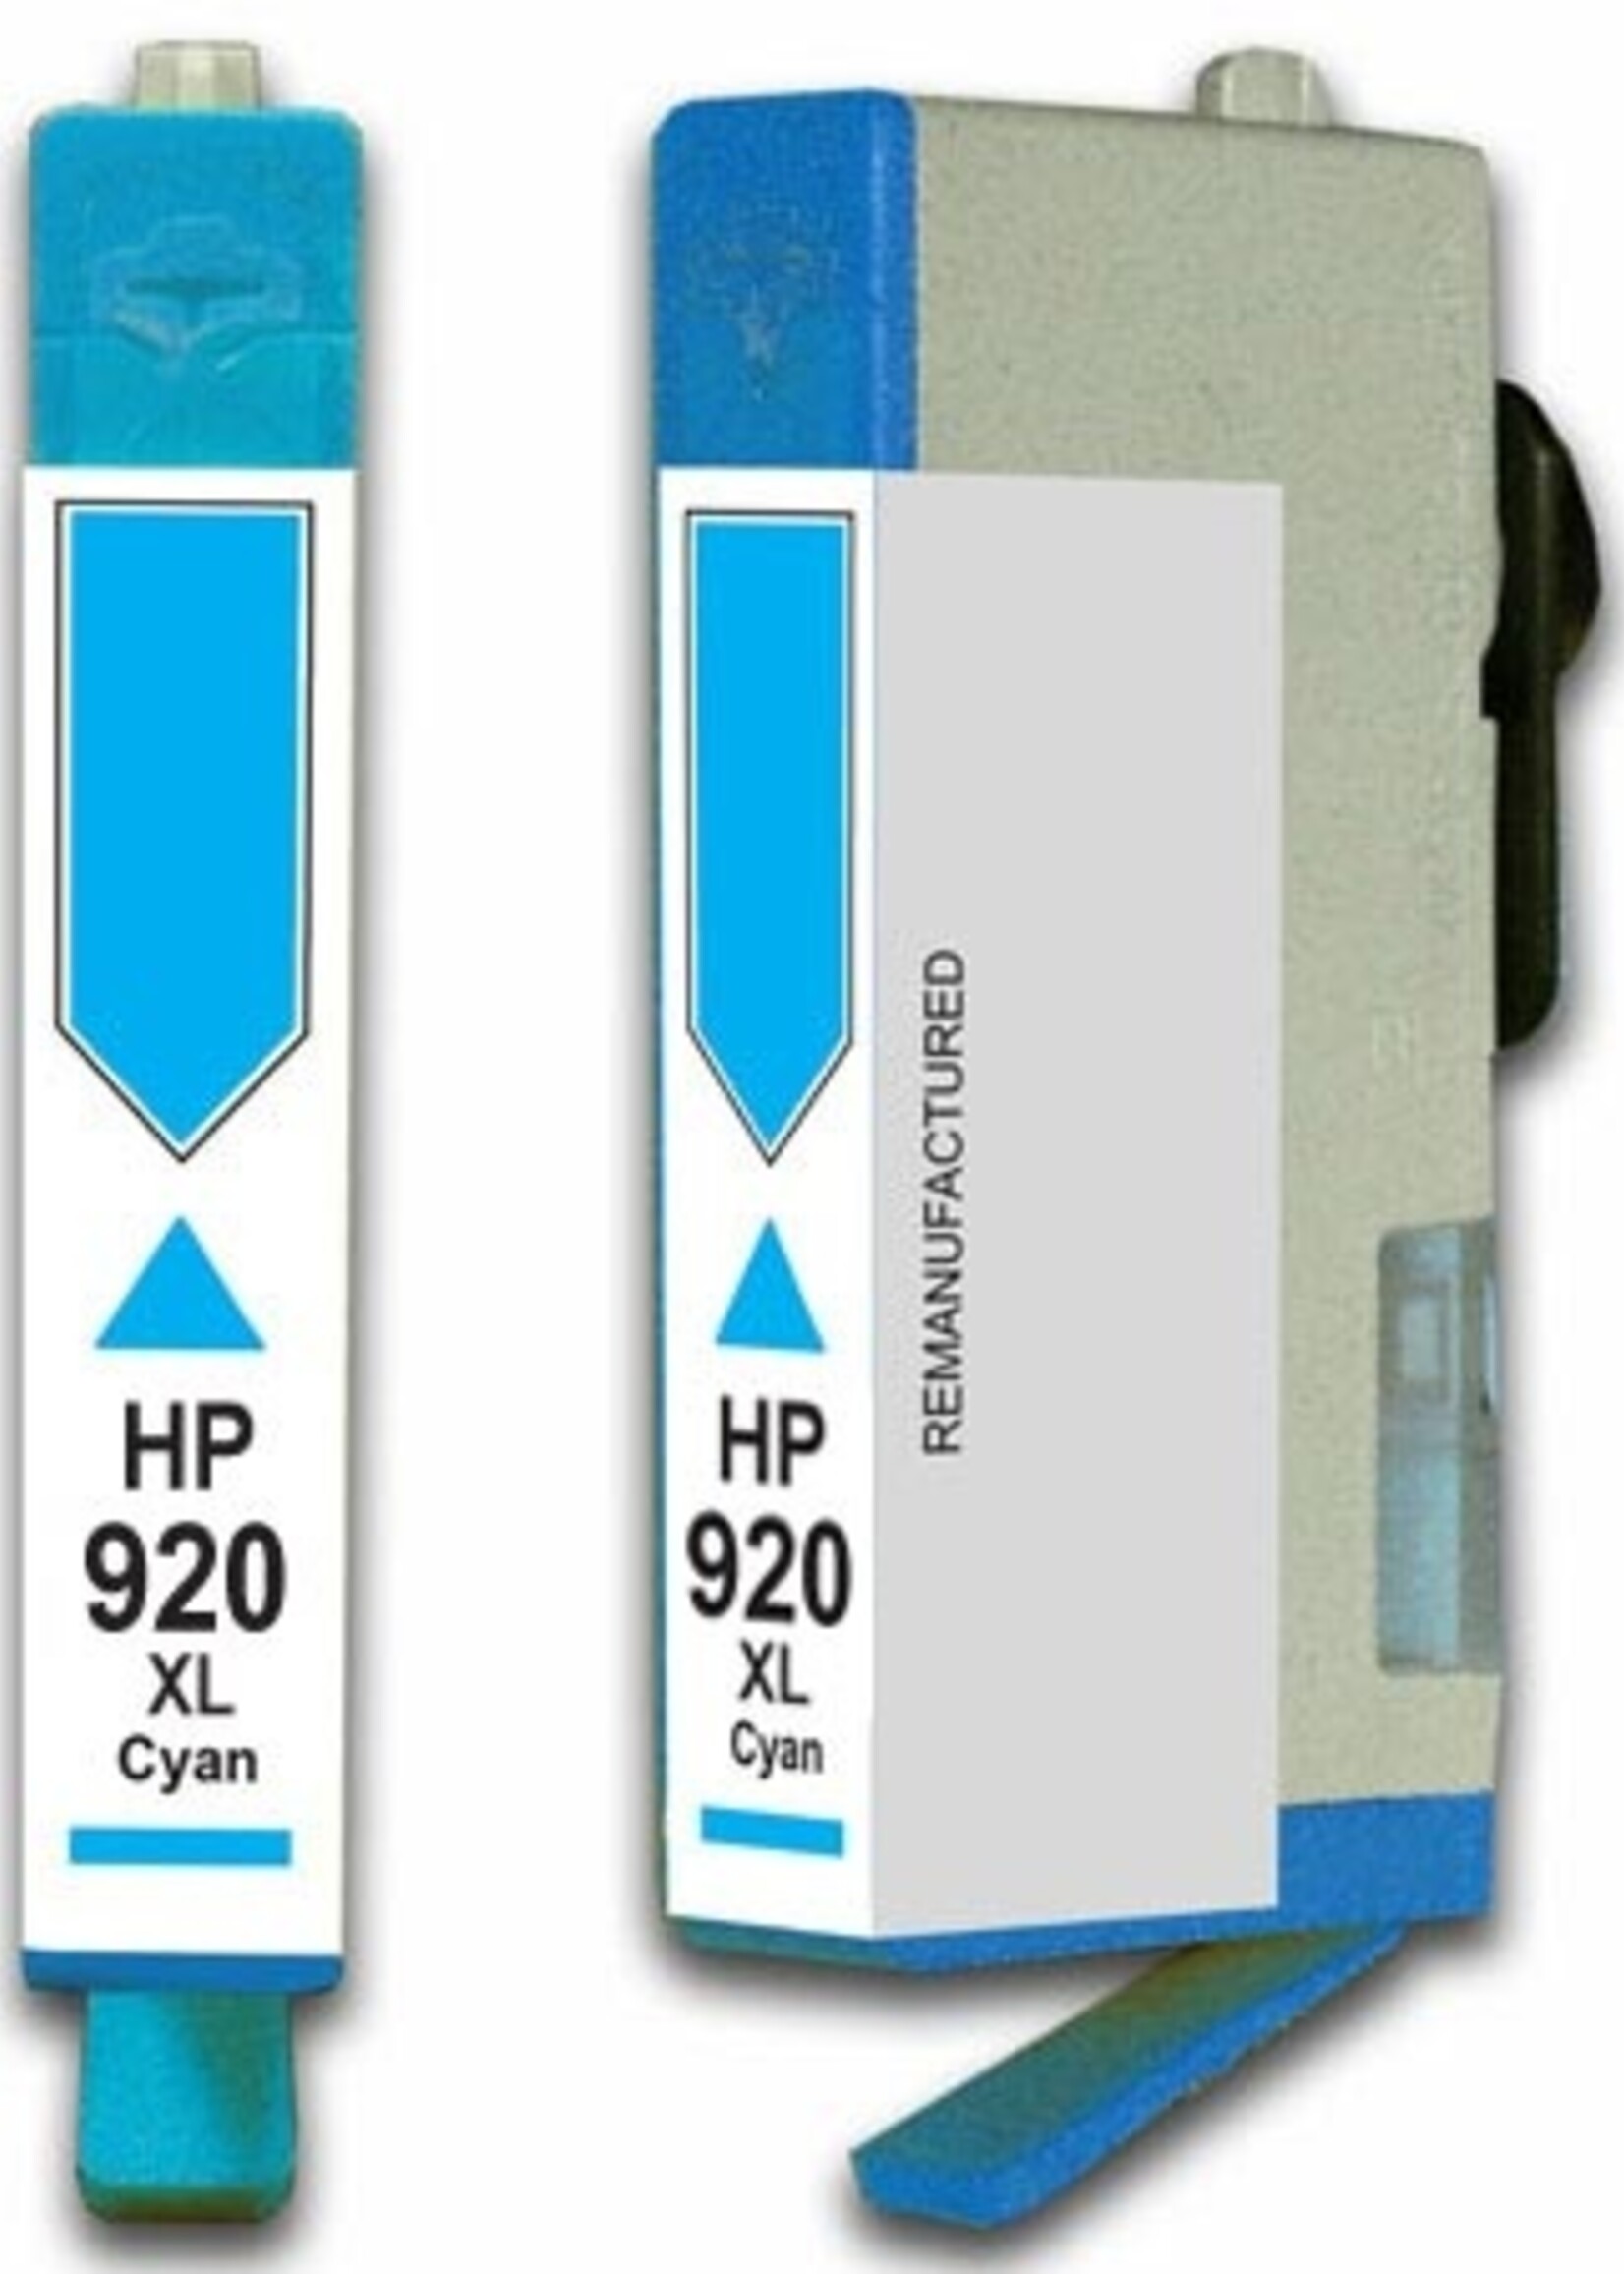 HP HP 920 XL Cyan